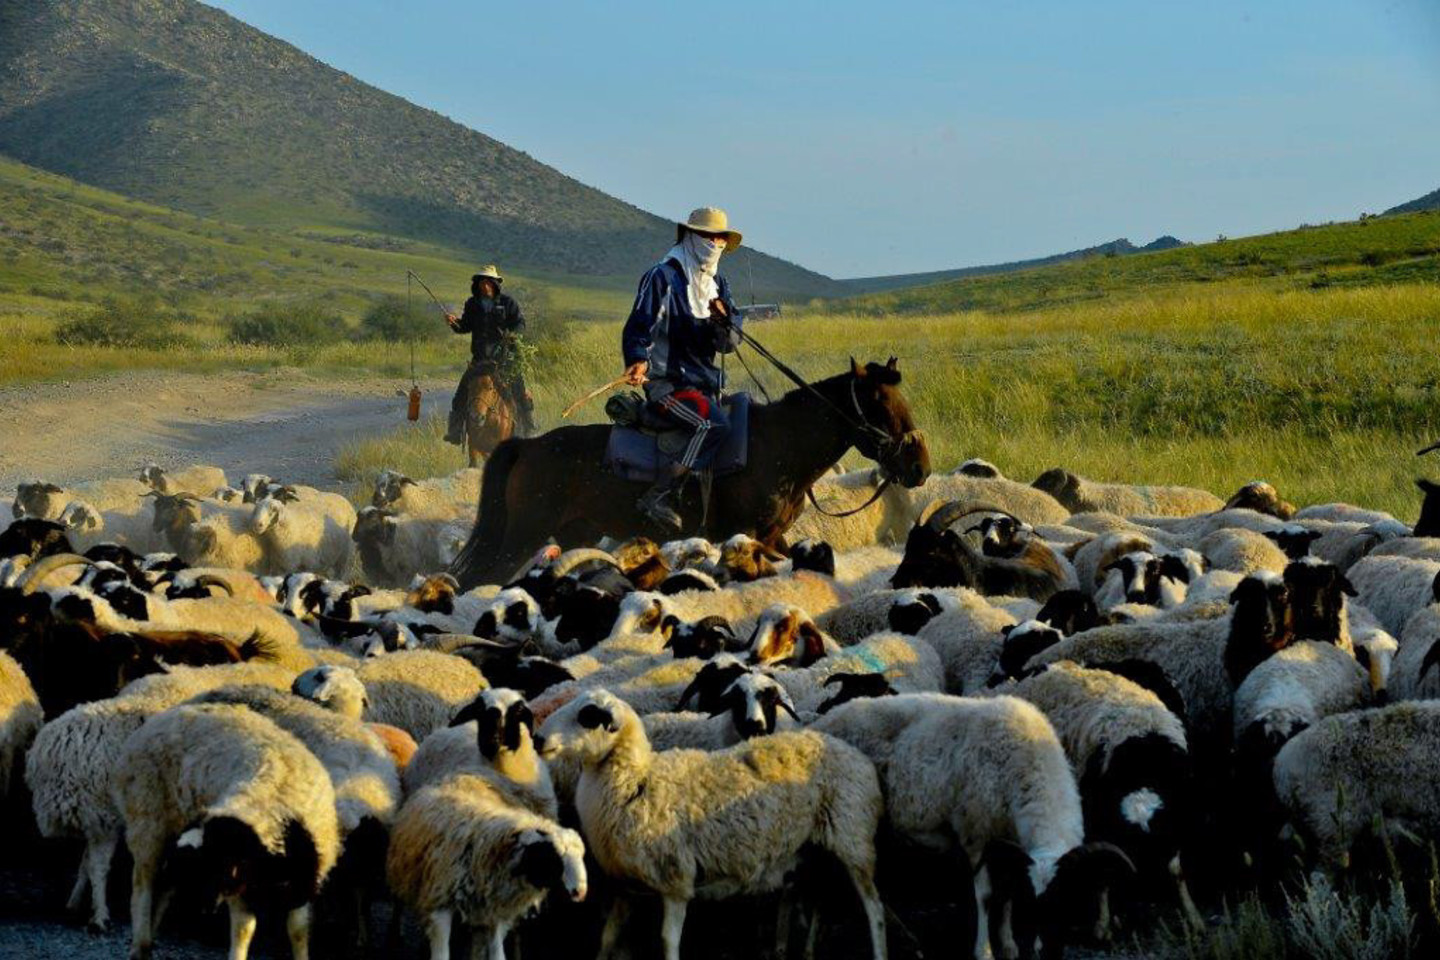 Kalnakasybos sektoriaus šuolis sustiprino Mongolijos ekonomiką, kuri nuo 2007 m. kasmet paaugdavo po maždaug 10 proc., o 2011 m. augimas siekė net 17,3 proc. – Mongolija tapo greičiausiai pasaulyje augančia ekonomika.<br>V.Ščiavinsko nuotr.